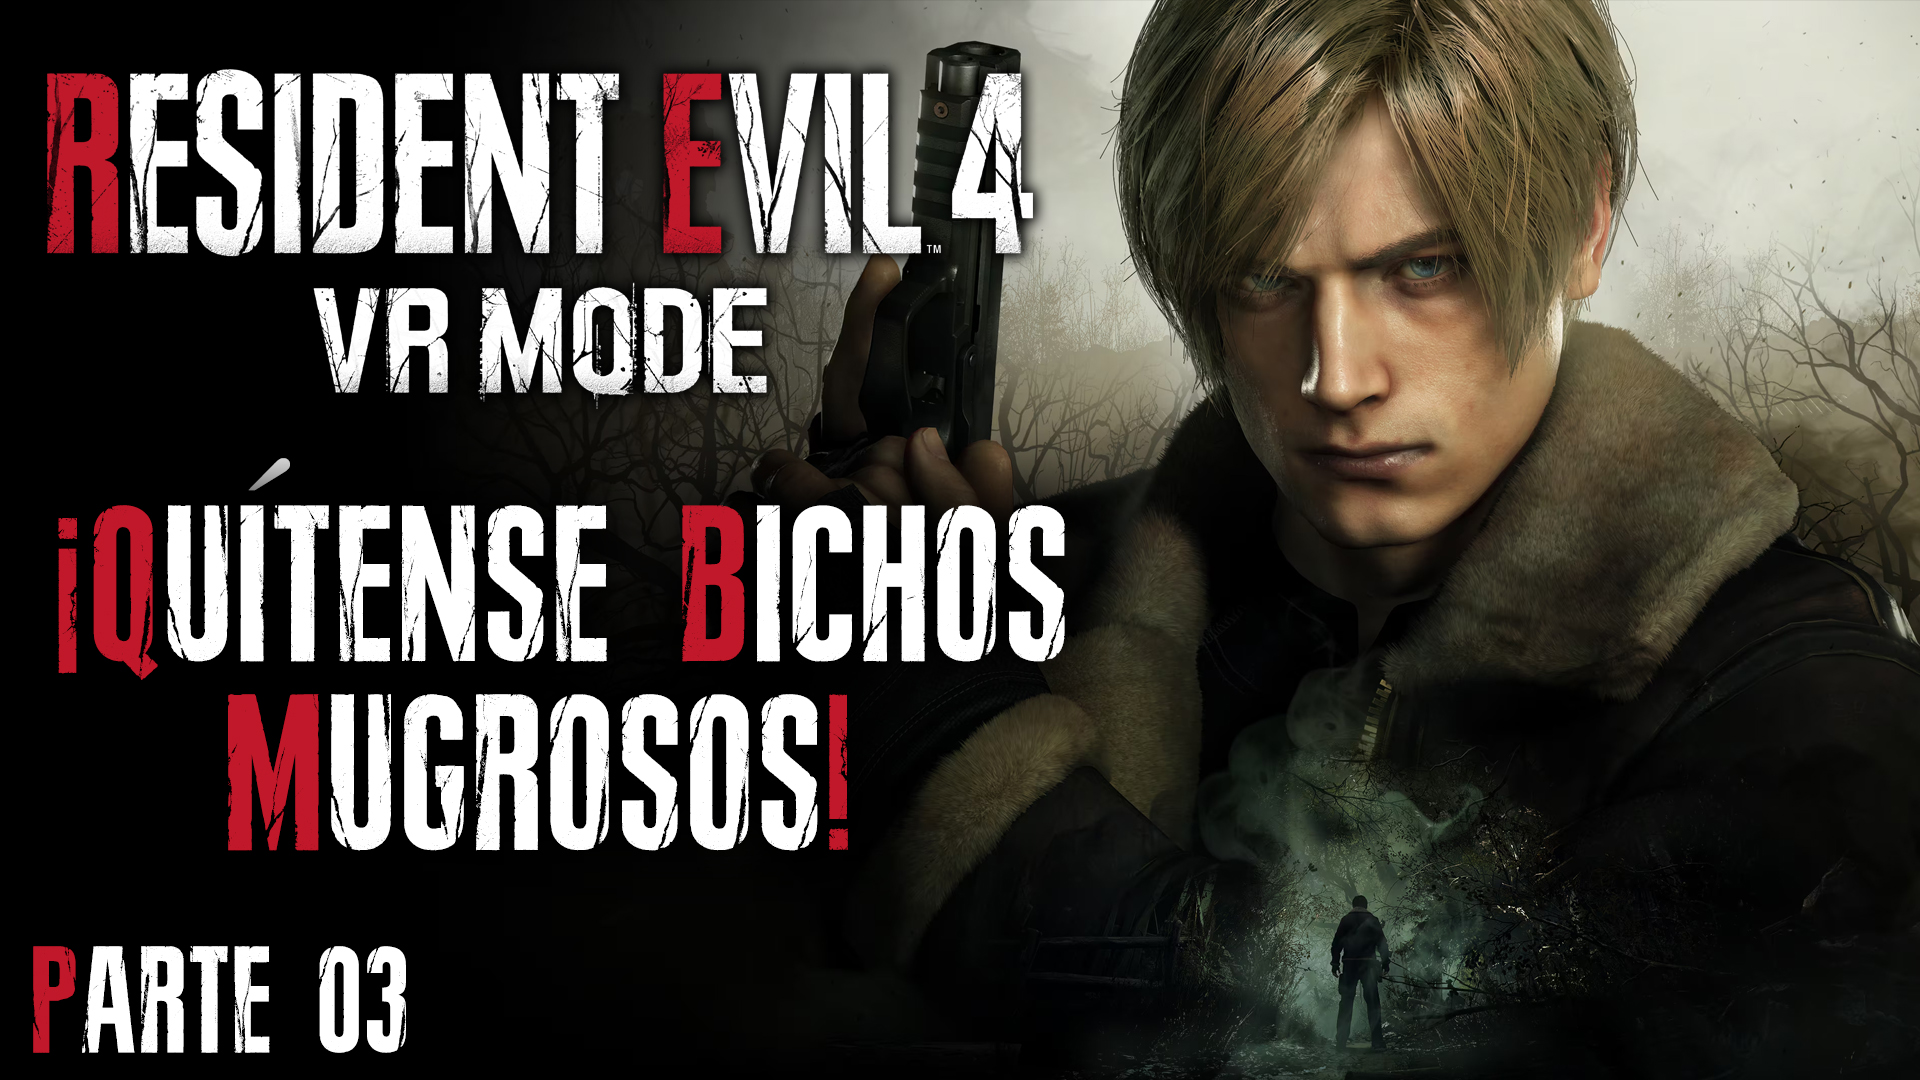 Serie Resident Evil 4 Remake VR Mode #3 – ¡Quítense Bichos Mugrosos!